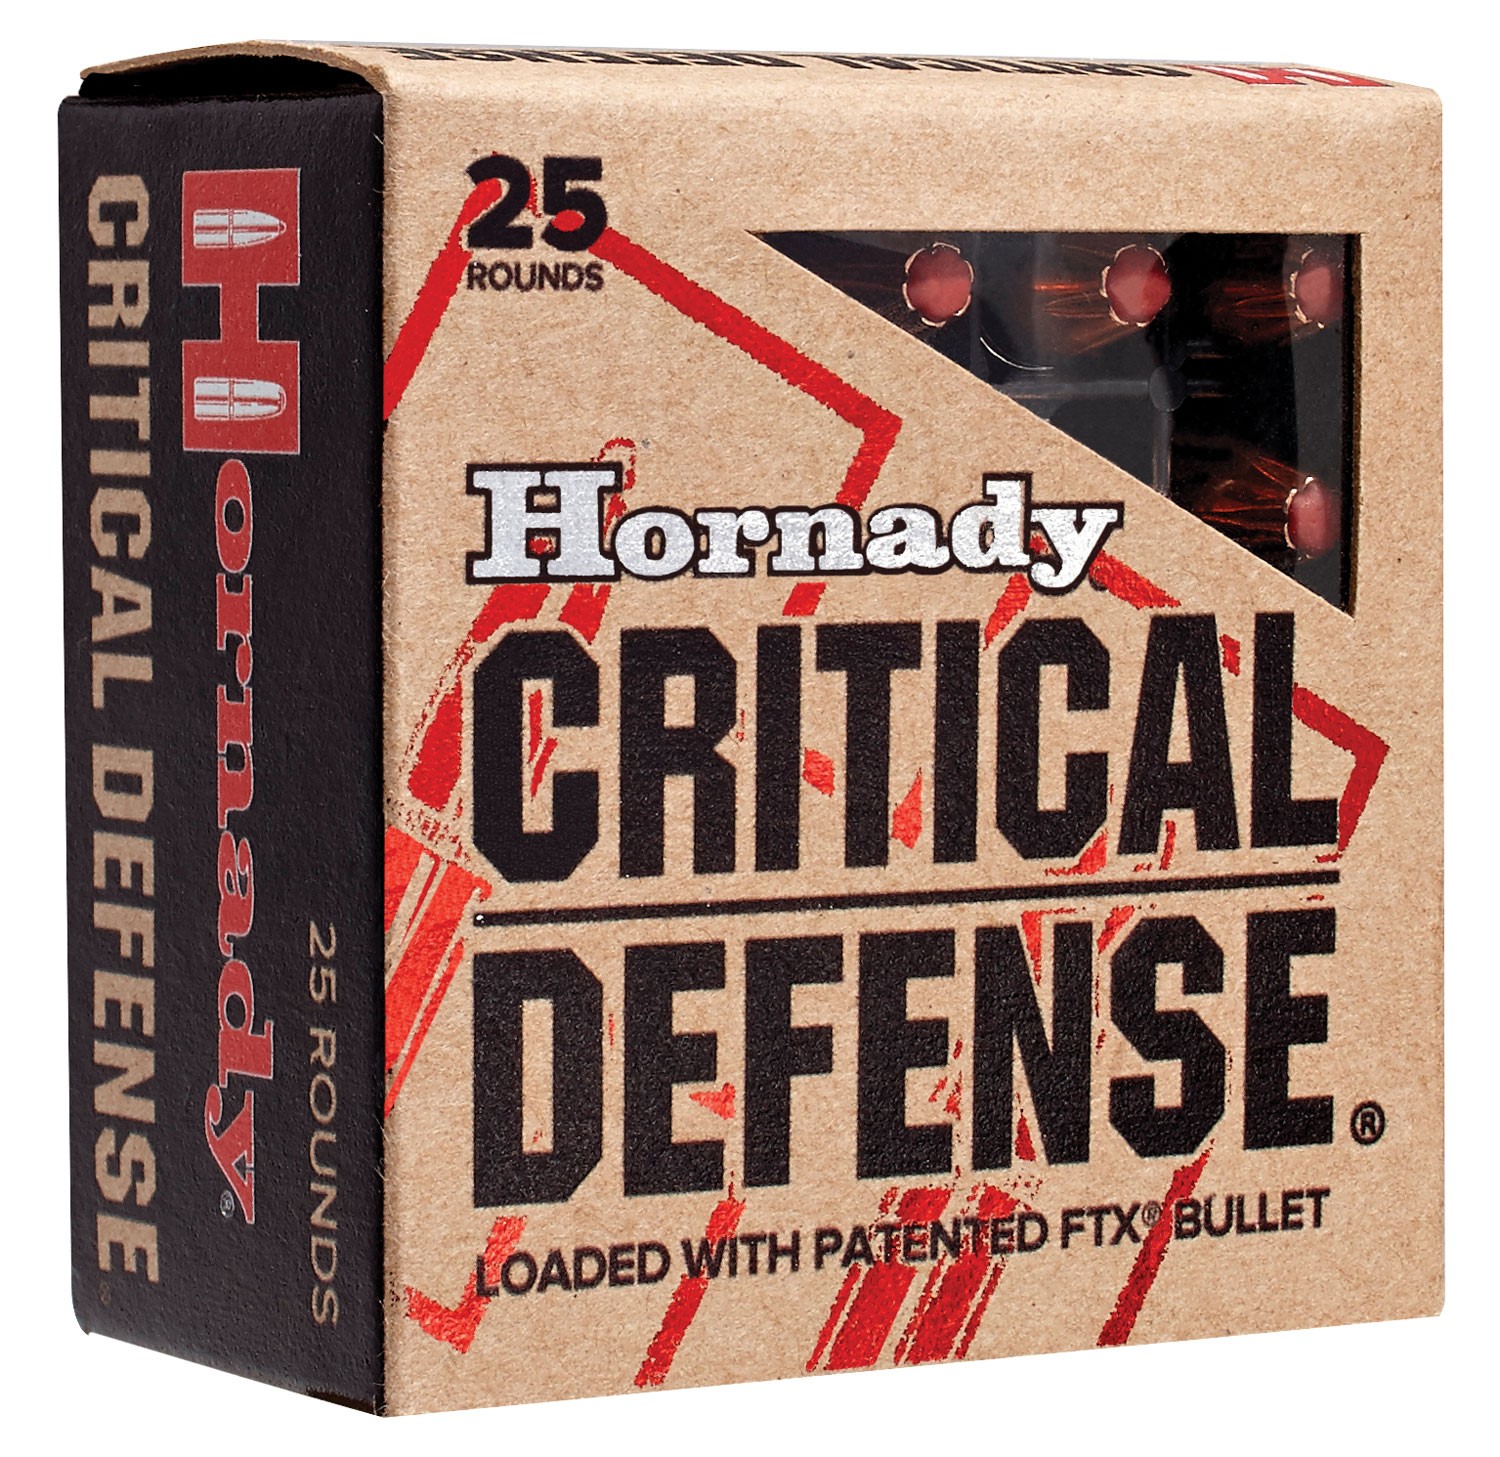 HORNADY CRITICAL DEFENSE 9MM 115G FTX, 20RDS